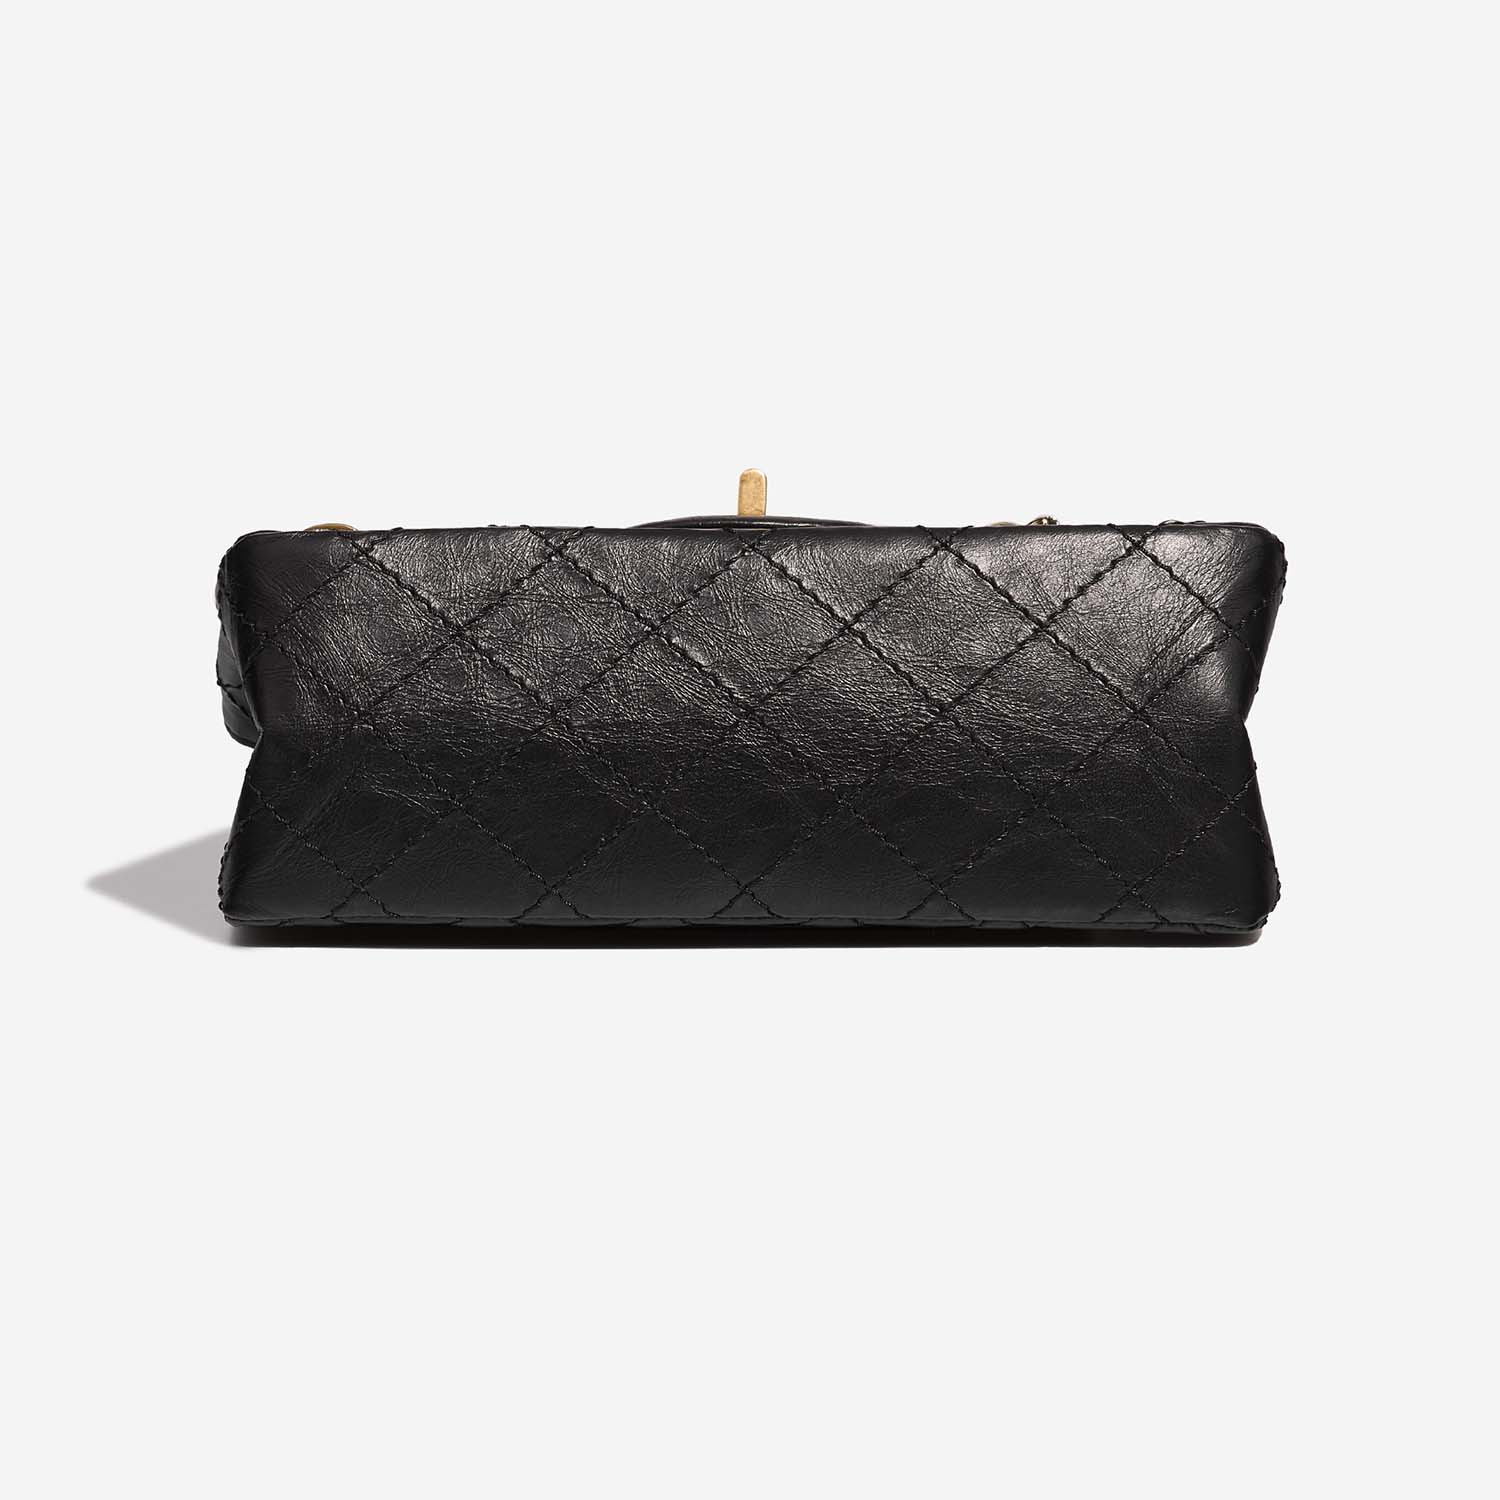 Chanel 255 225 Black Bottom | Verkaufen Sie Ihre Designer-Tasche auf Saclab.com